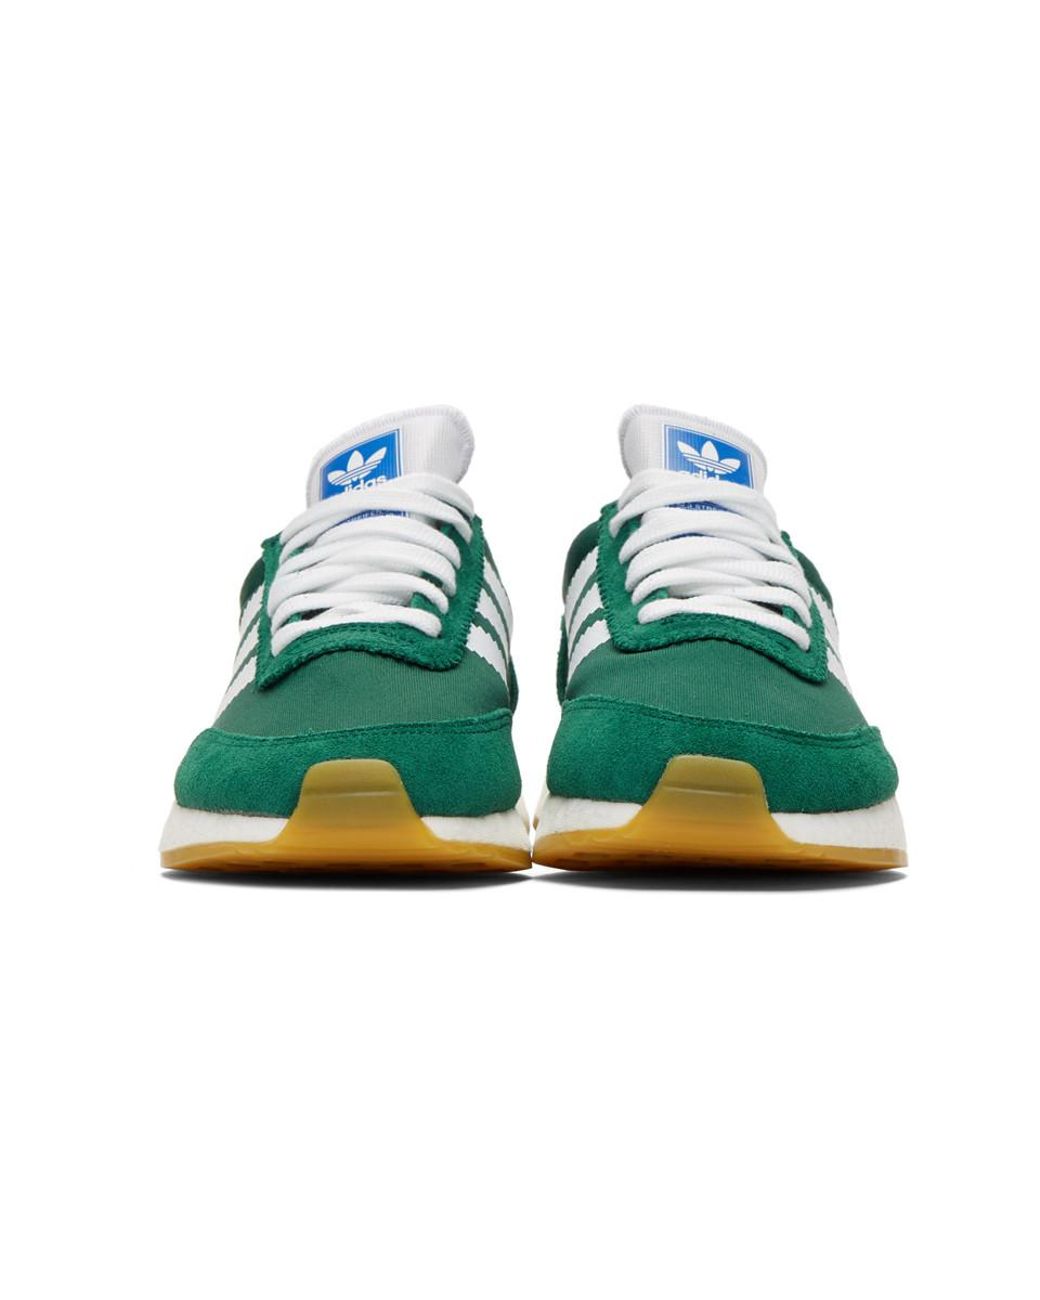 adidas Originals Green I-5923 Sneakers | Lyst Australia